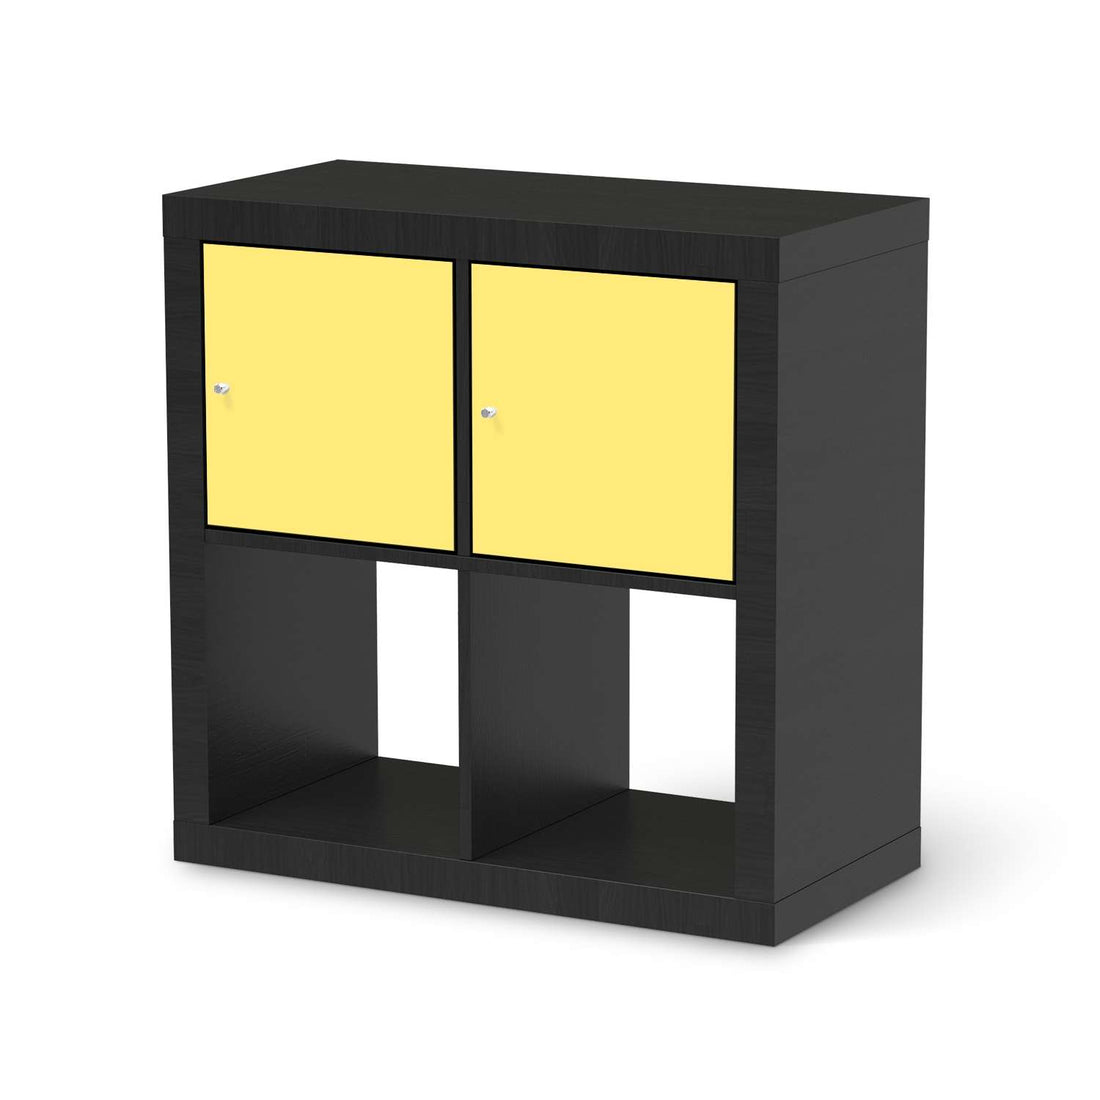 Möbel Klebefolie Gelb Light - IKEA Expedit Regal 2 Türen Quer - schwarz